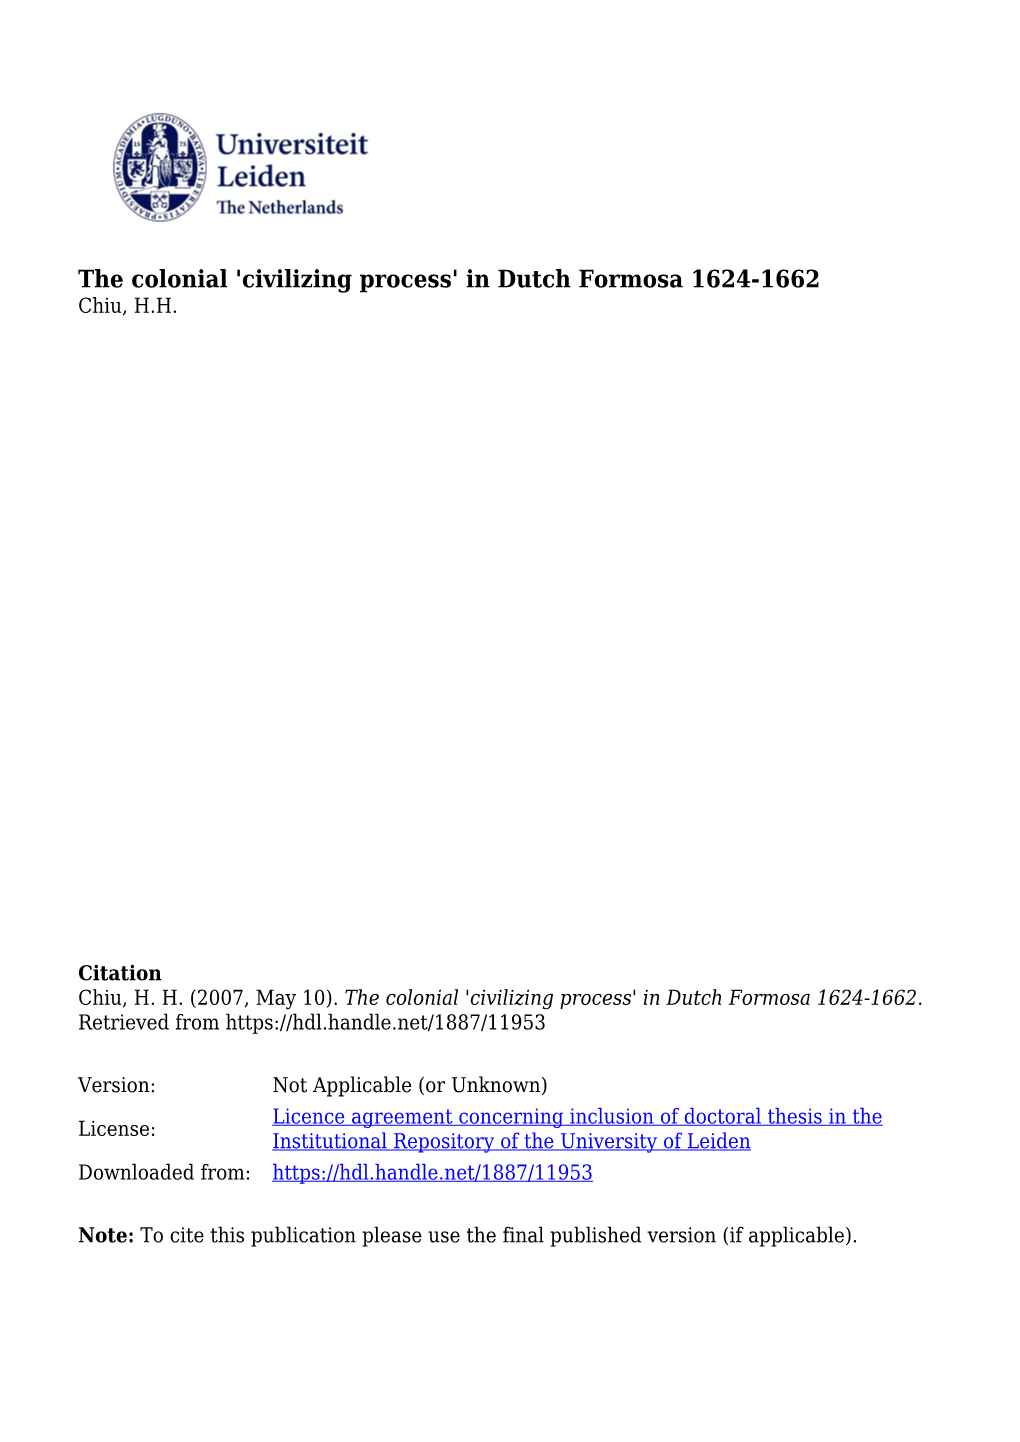 The Colonial 'Civilizing Process' in Dutch Formosa 1624-1662 Chiu, H.H